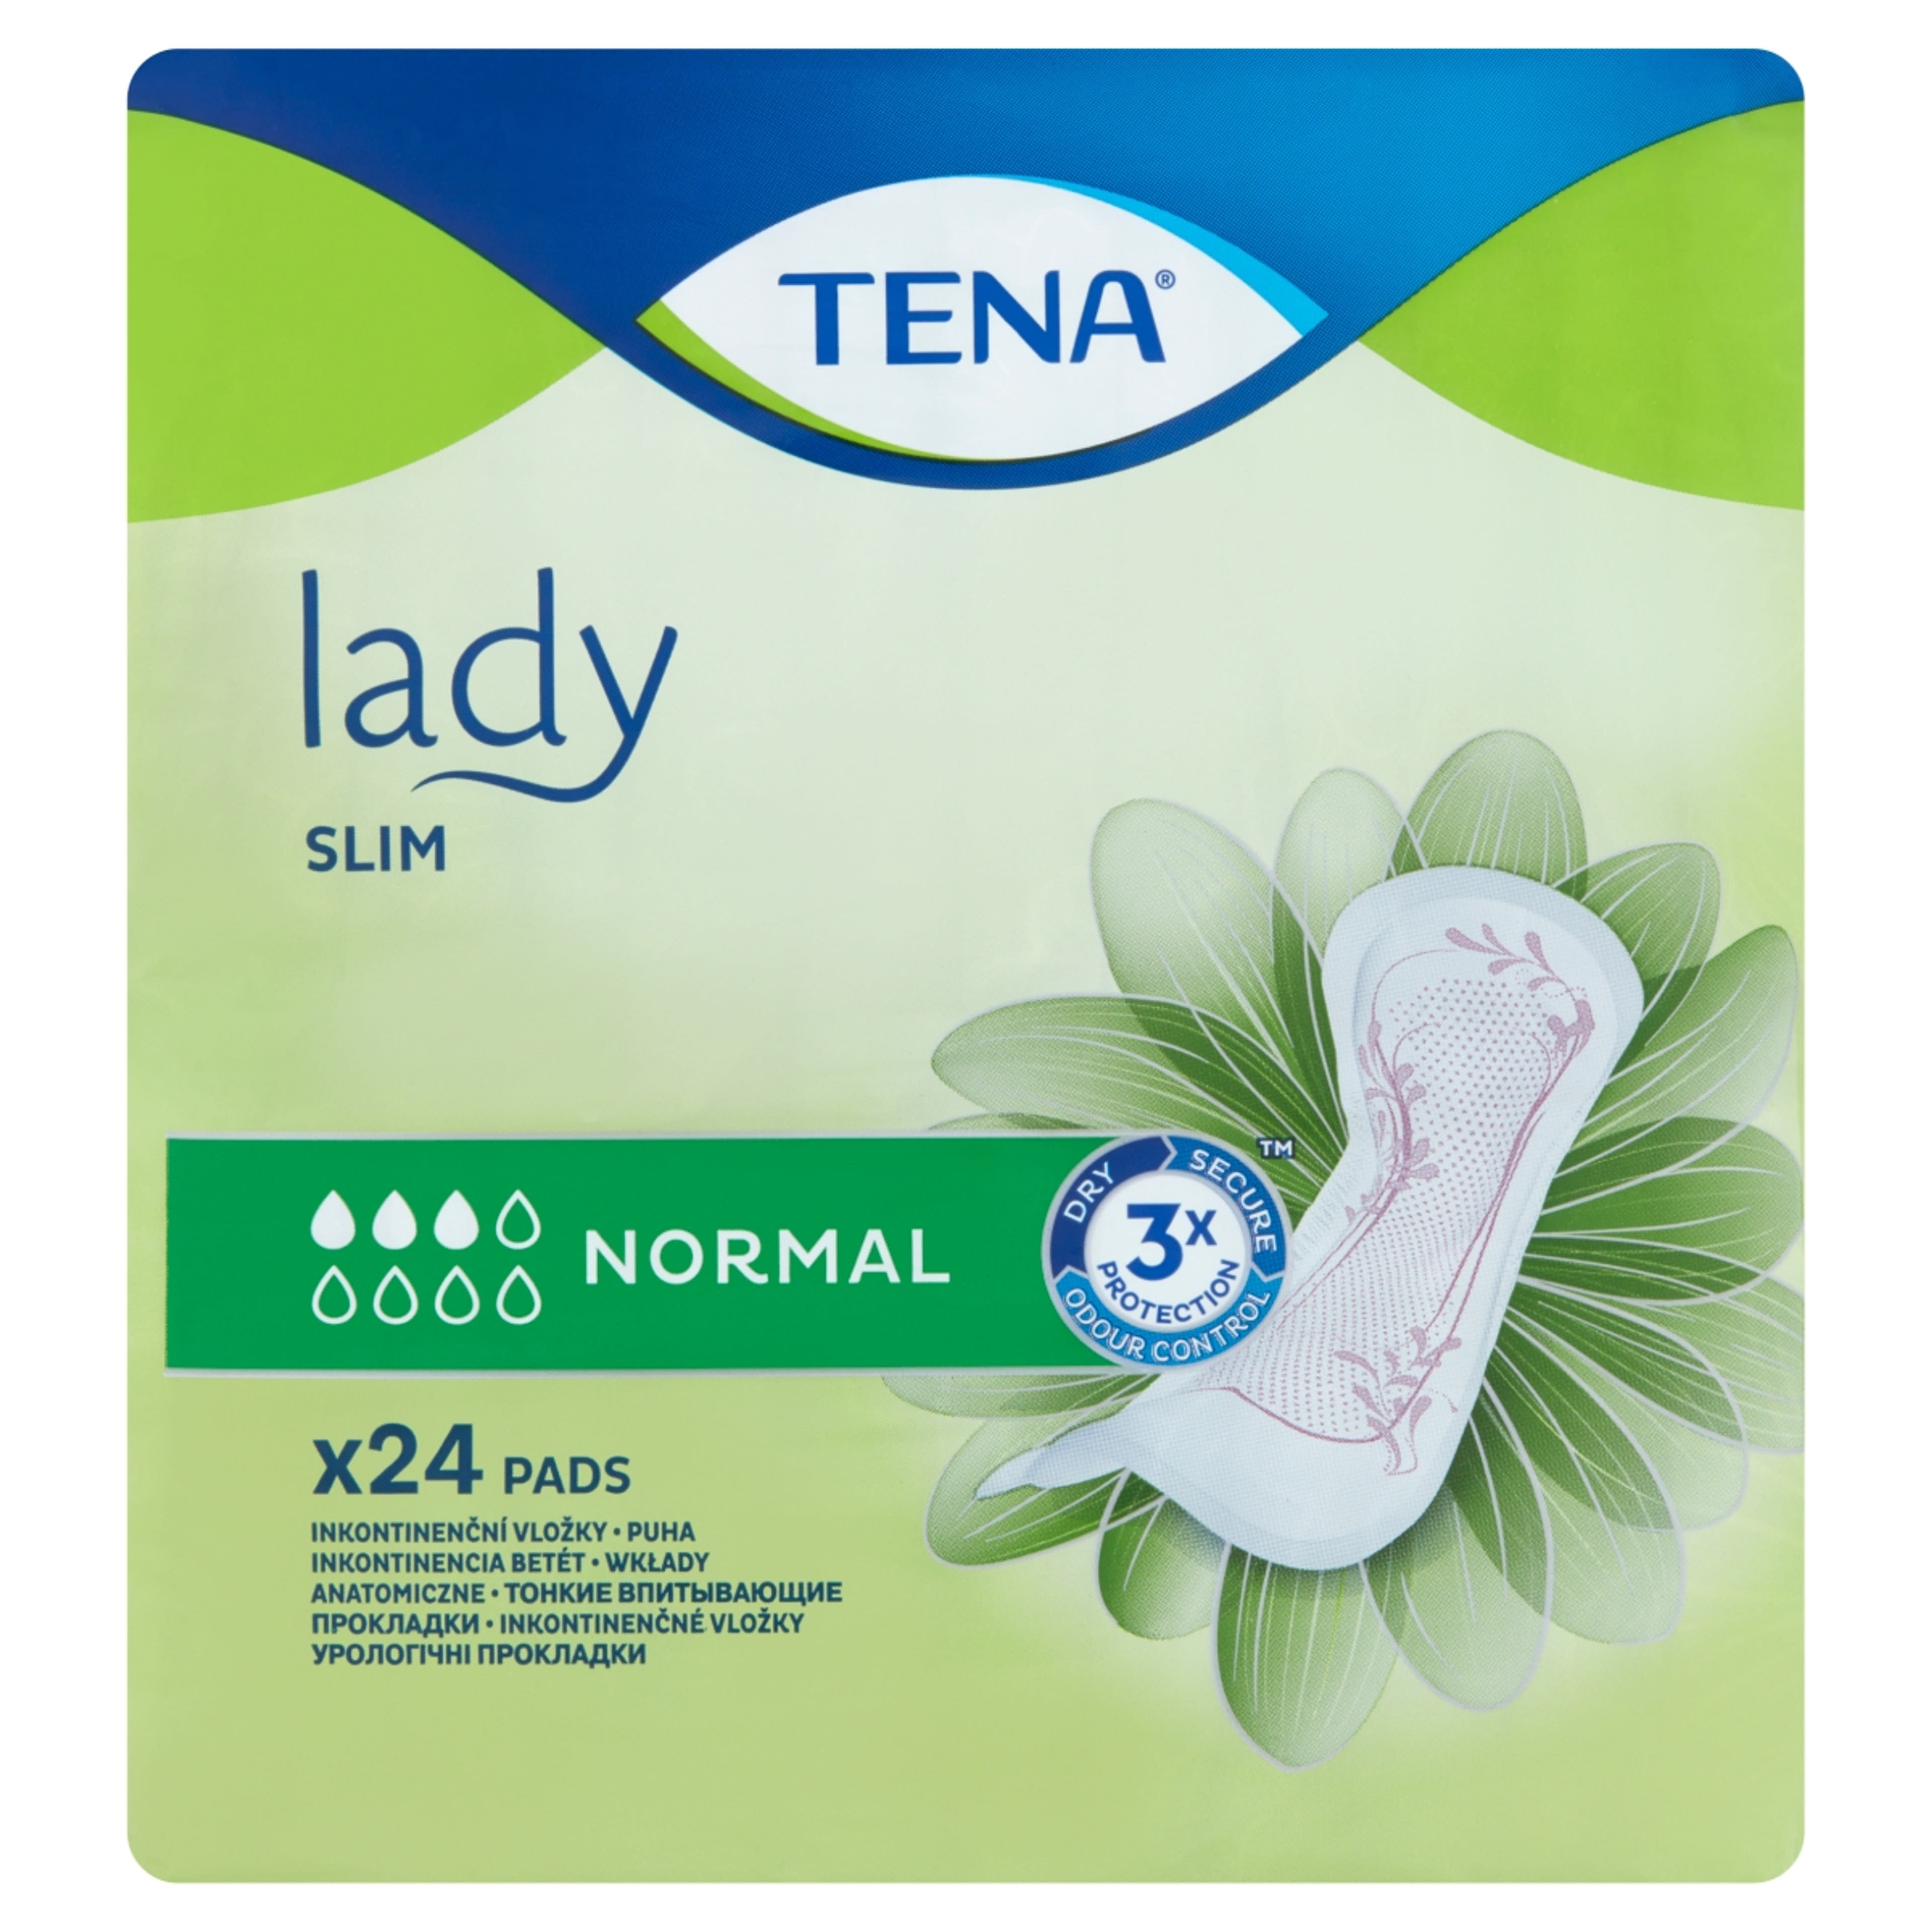 Tena lady slim normál inkontinencia betét - 24 db-1